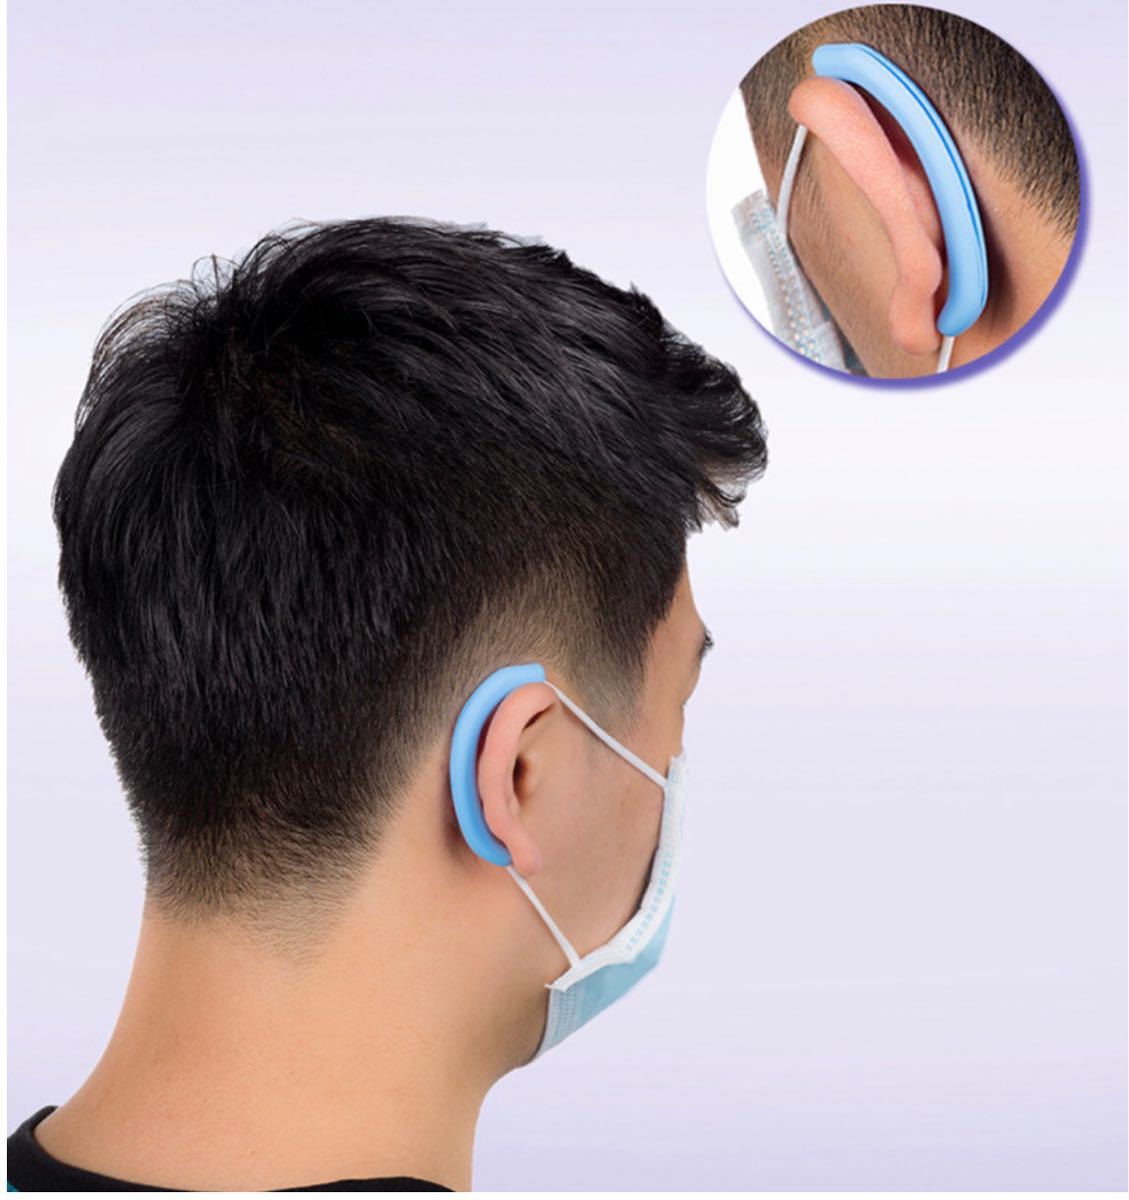 シリコンイヤーパッド 耳保護 イヤーガード イヤーカバー 5セット